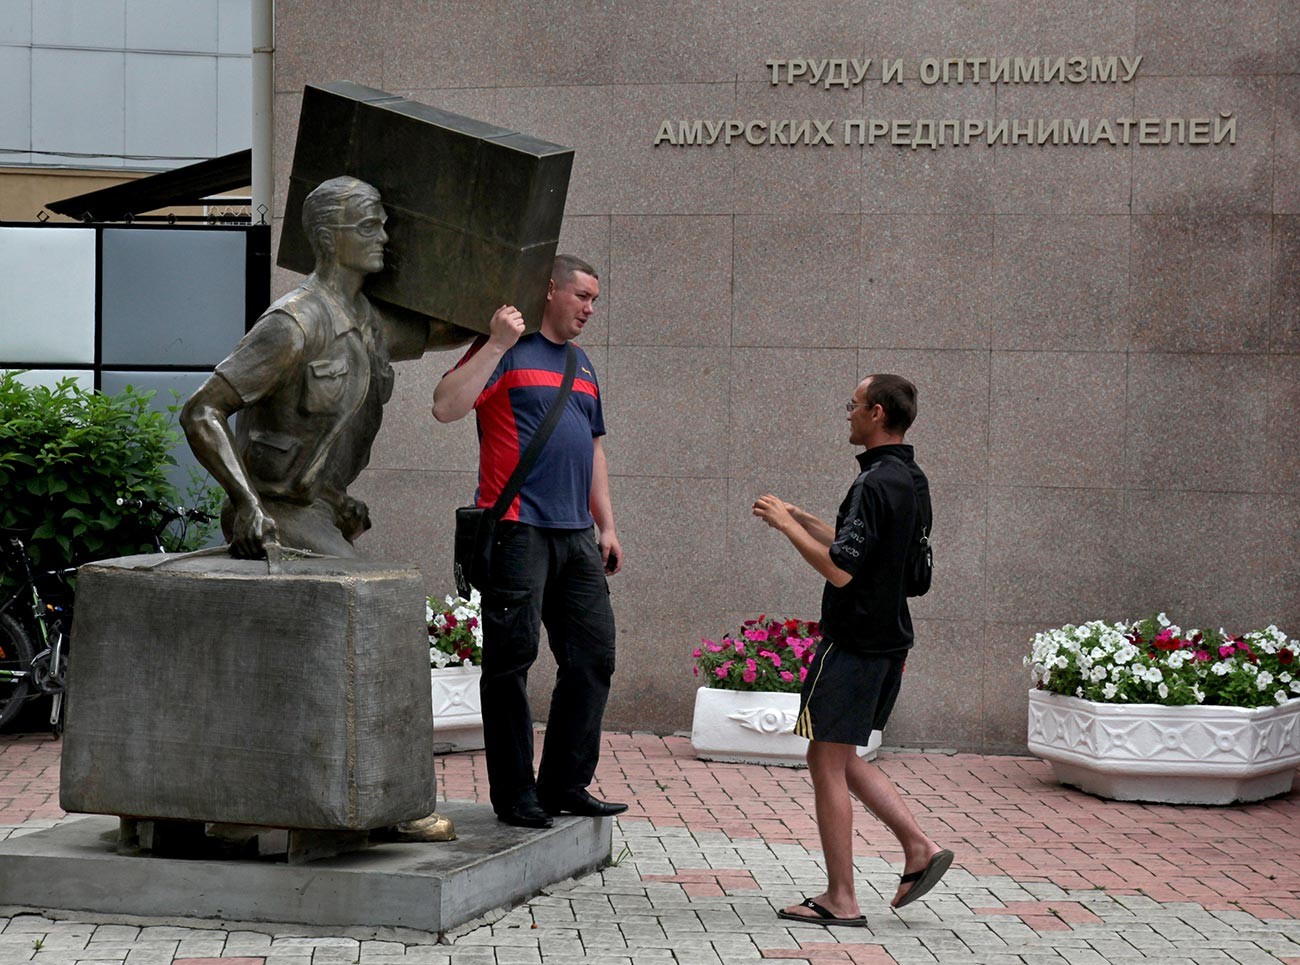 Un monumento ai chelnokì a Blagoveschensk, nell'Estremo oriente russo